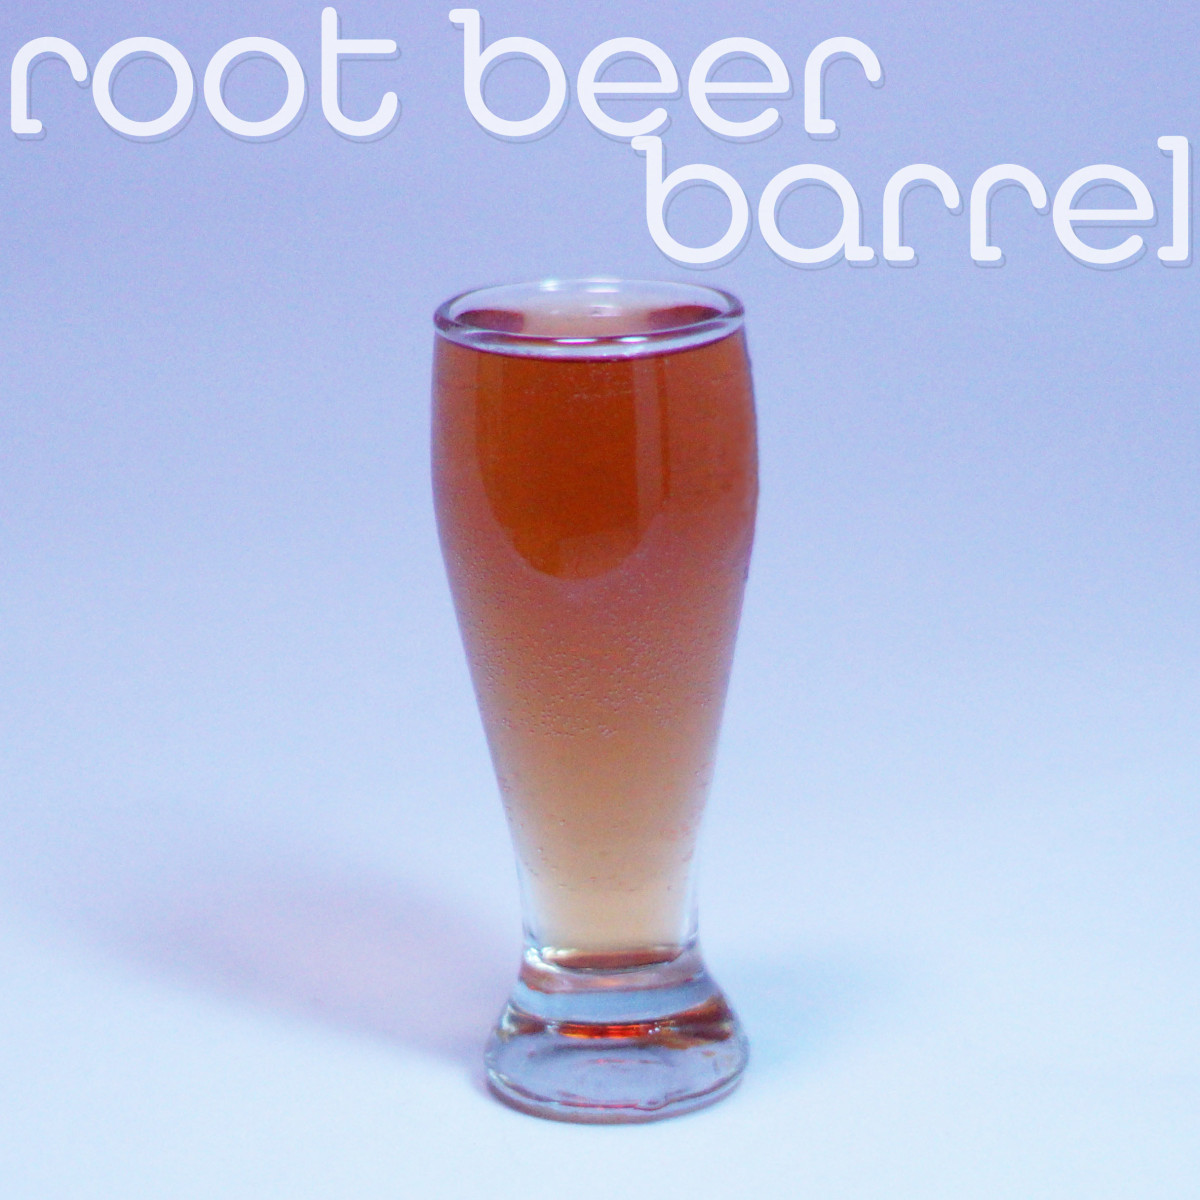 Root Beer Barrel